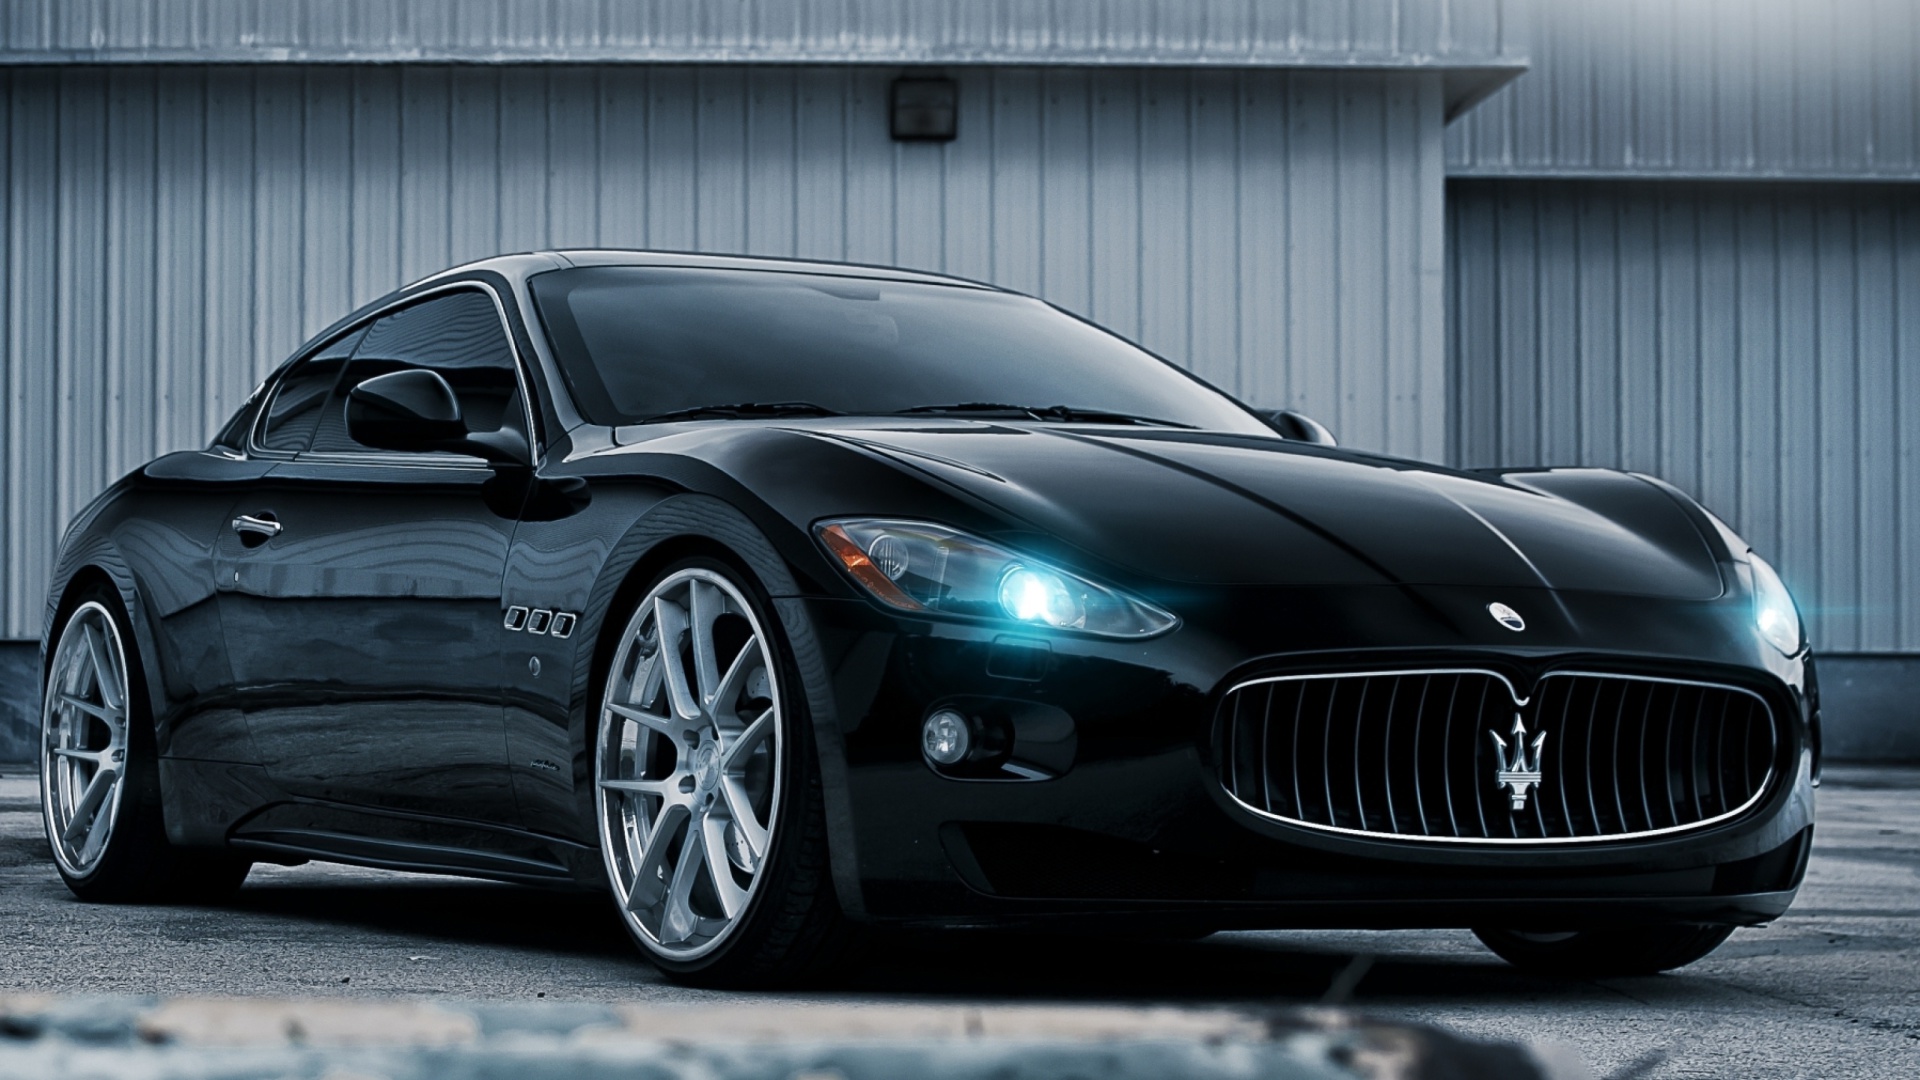 Fondo de pantalla Maserati GranTurismo HD 1920x1080